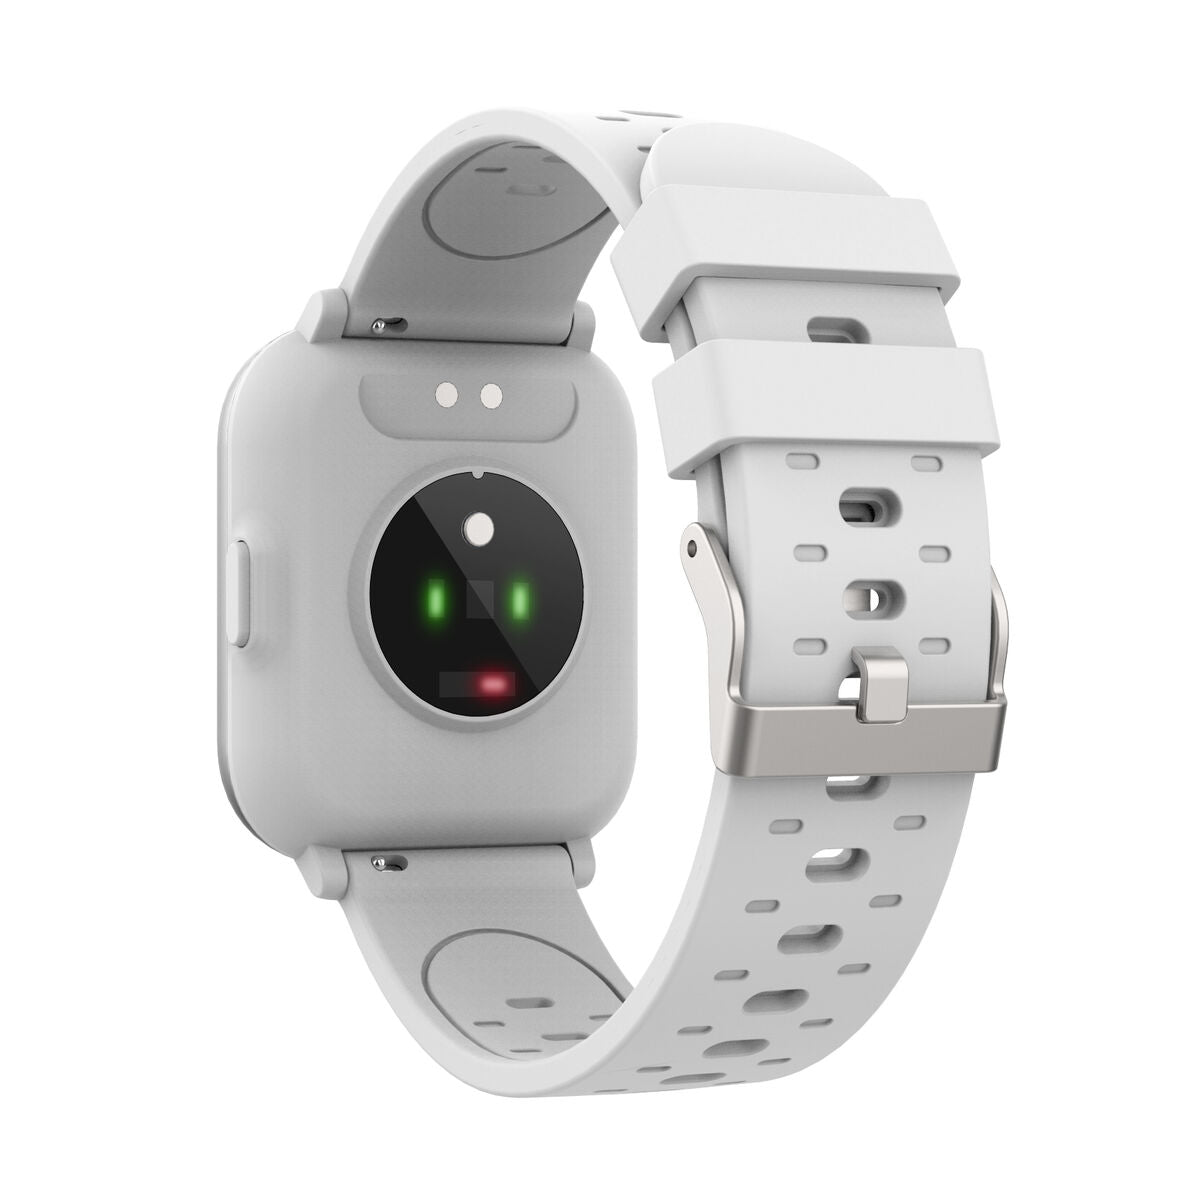 Kaufe Smartwatch Denver Electronics SW-164 180 mAh 1,4" bei AWK Flagship um € 54.00